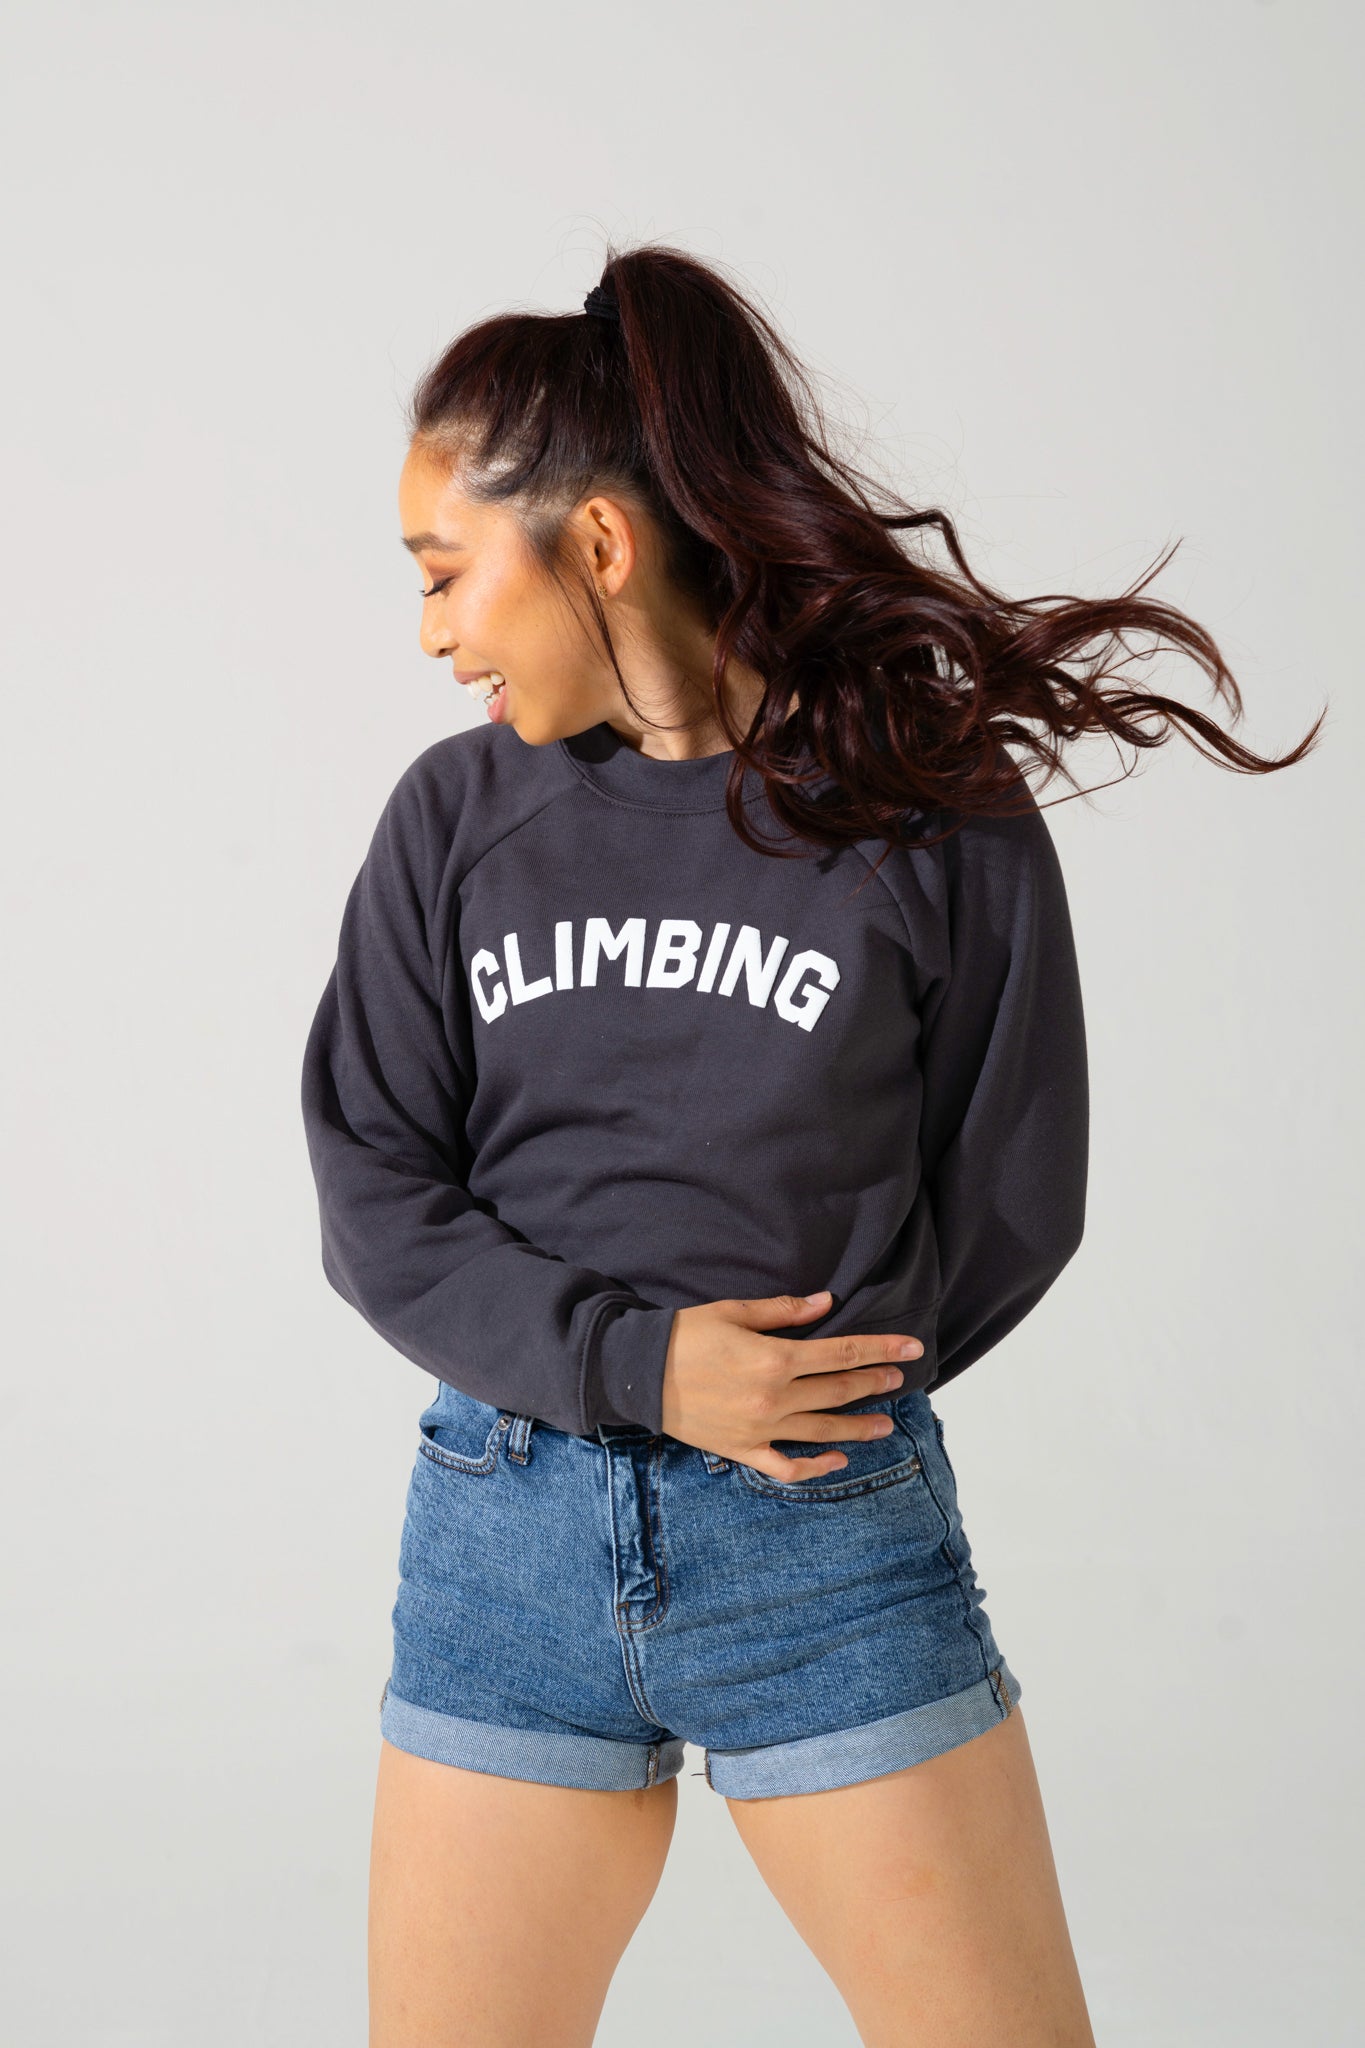 rock climbing sweater - women's climbing sweater - monopkt